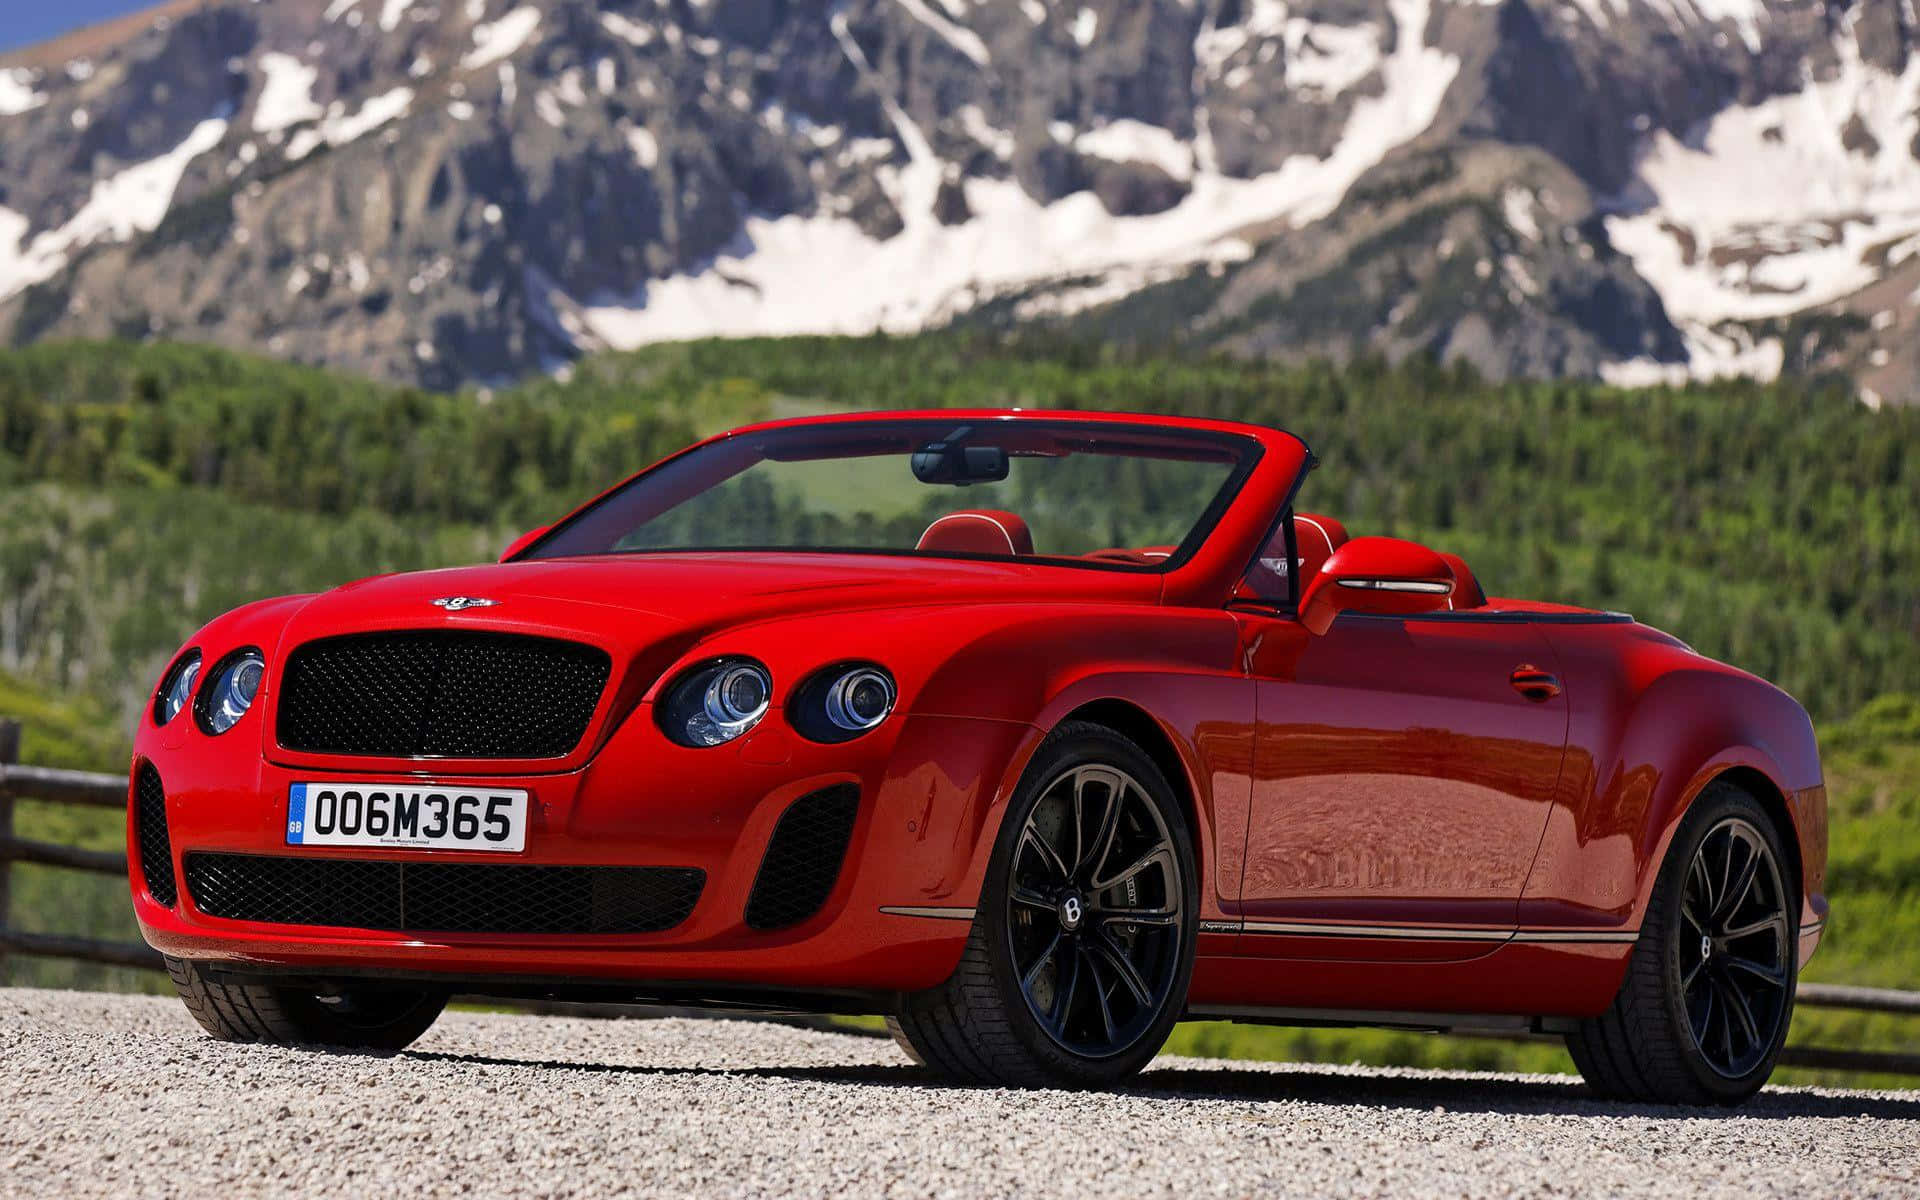 Kør med tilfredshed i din luksuriøse Bentley Sport. Wallpaper